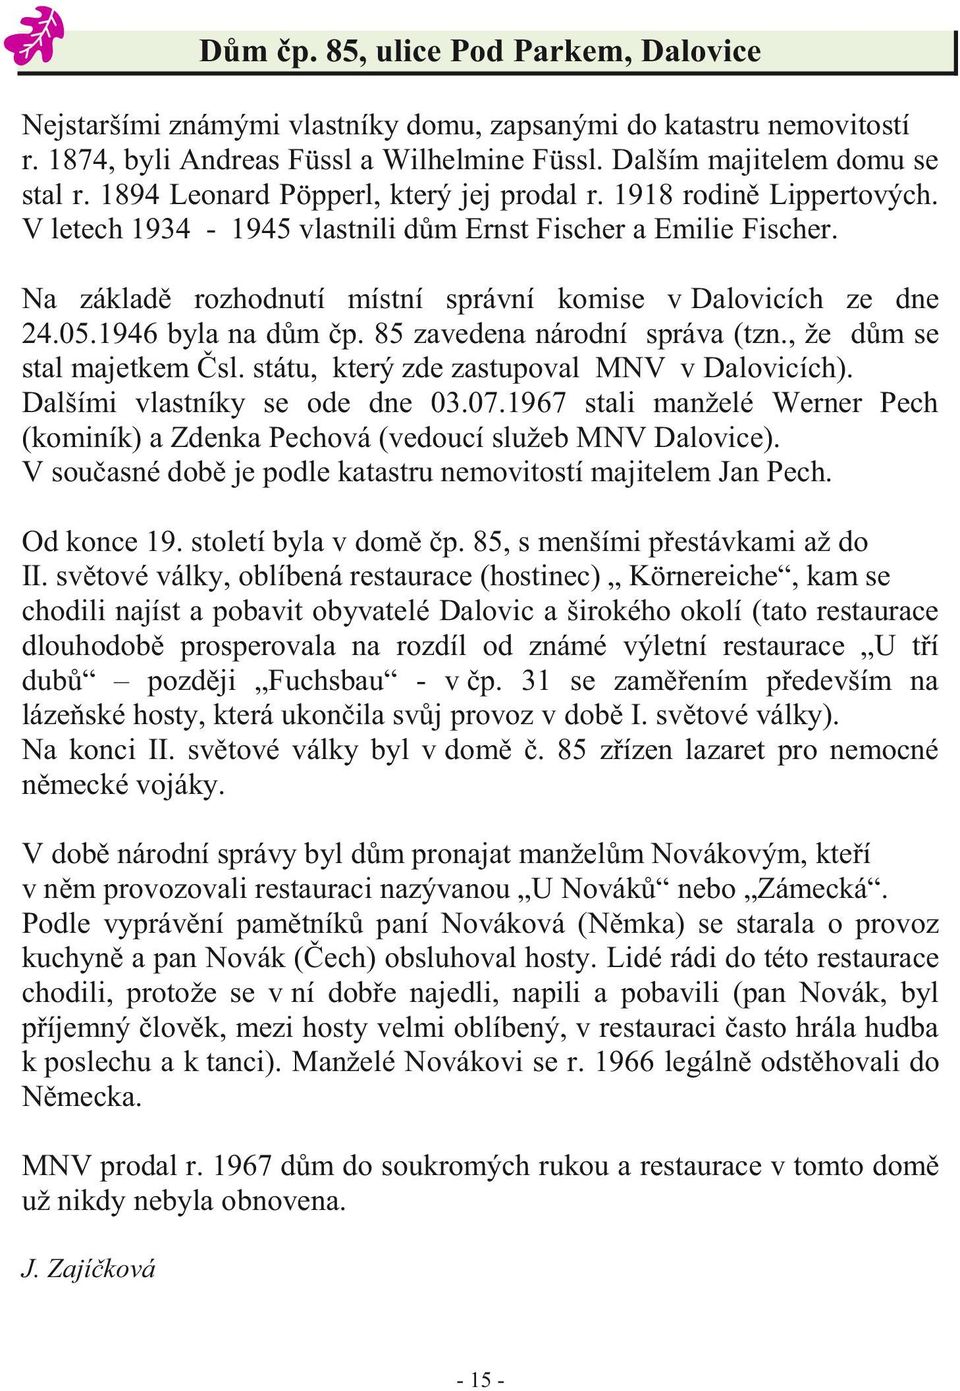 05.1946 byla na dům čp. 85 zavedena národní správa (tzn., že dům se stal majetkem Čsl. státu, který zde zastupoval MNV v Dalovicích). Dalšími vlastníky se ode dne 03.07.